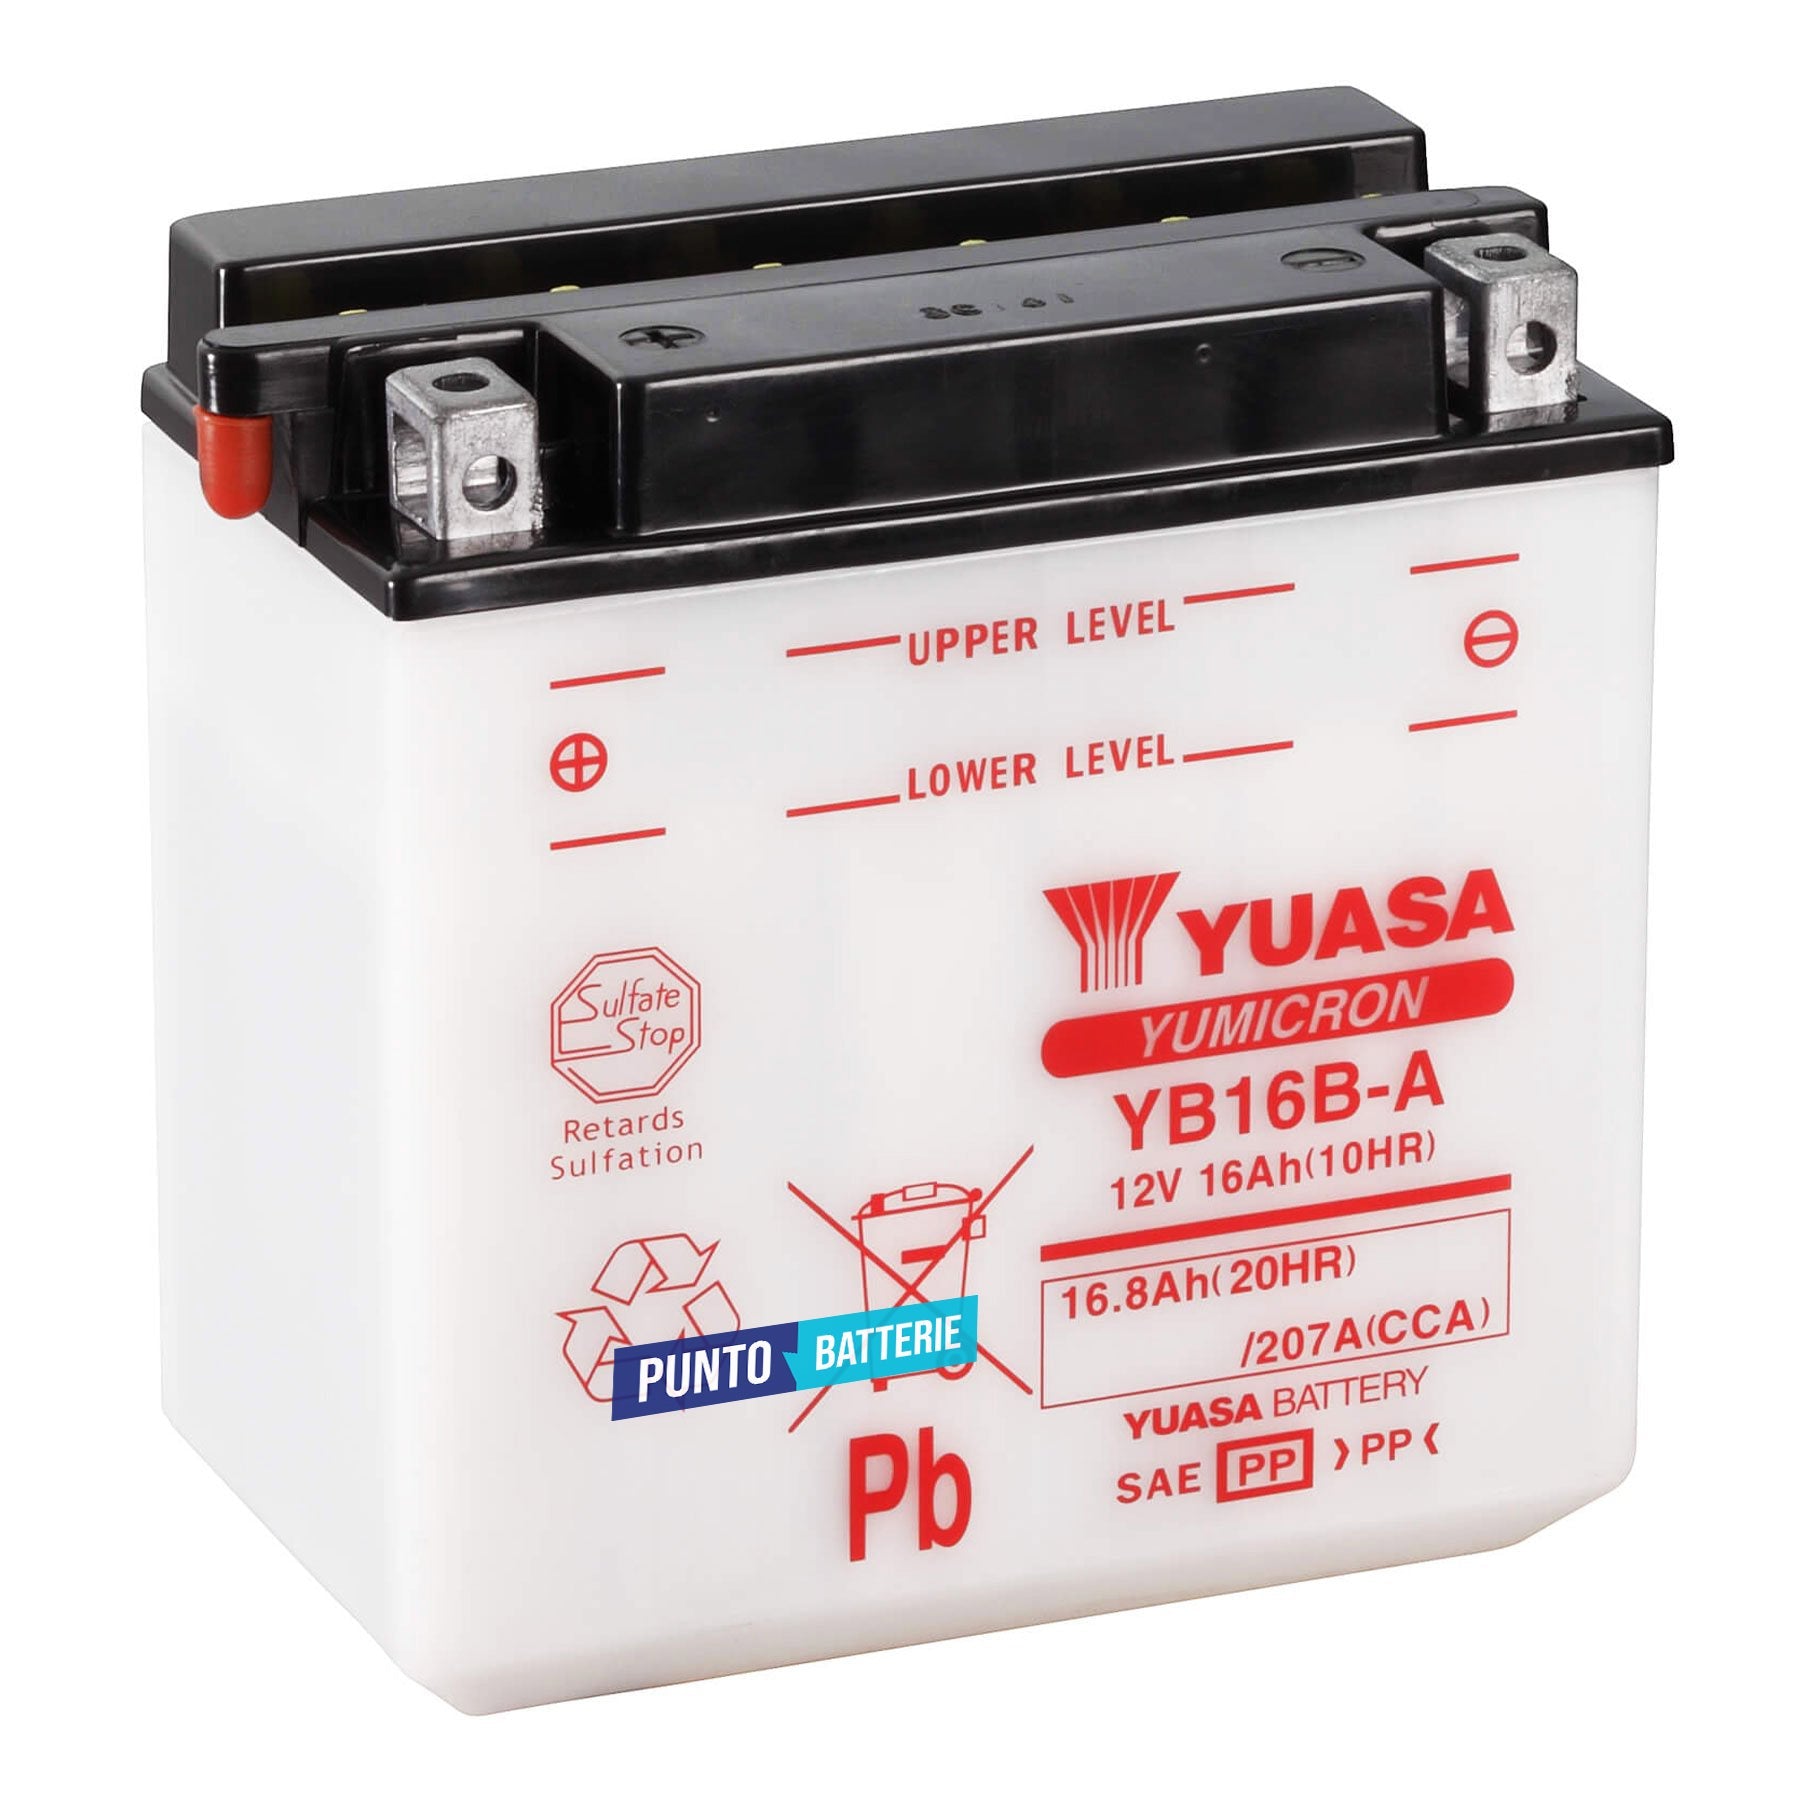 Batteria originale Yuasa YuMicron YB16B-A, dimensioni 160 x 90 x 161, polo positivo a sinistra, 12 volt, 16 amperora, 207 ampere. Bat